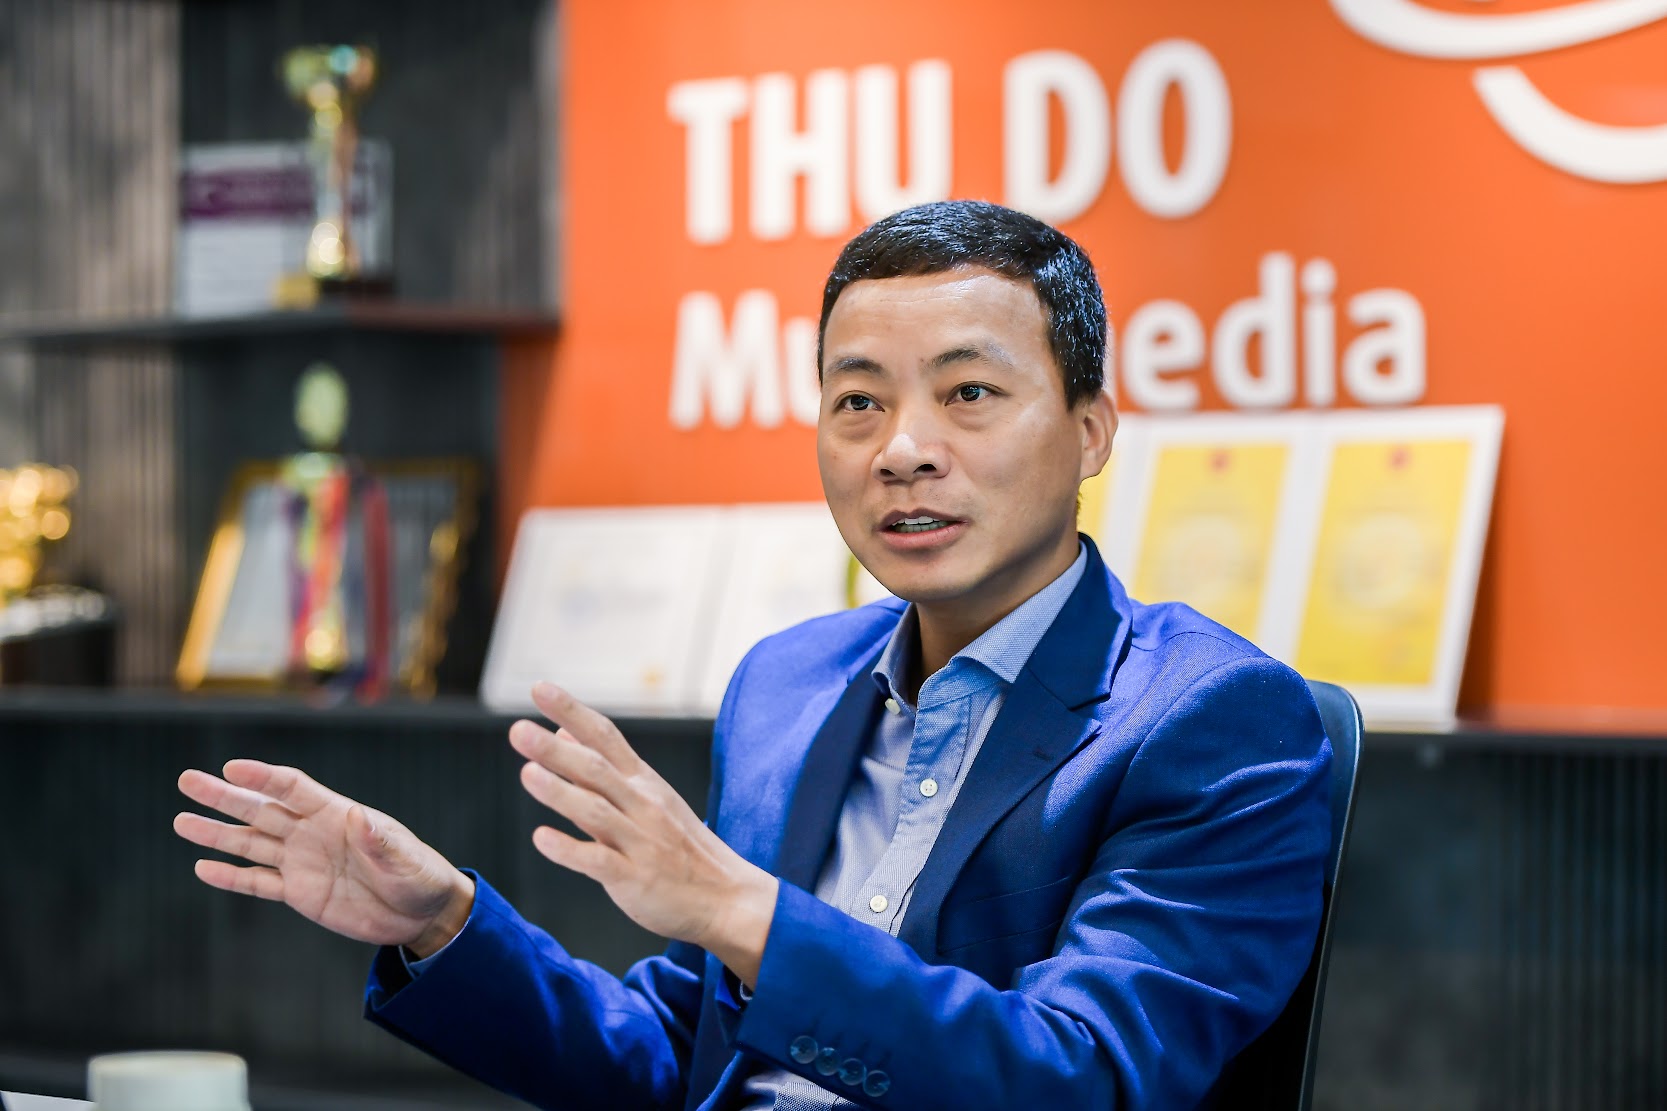 CEO Thủ Đô Multimedia kiếm 1 triệu USD trong 2 tuần ở tuổi 29: Cơ hội sẽ không bao giờ đến nếu không có những năm tháng công hiến quên mình - Ảnh 7.